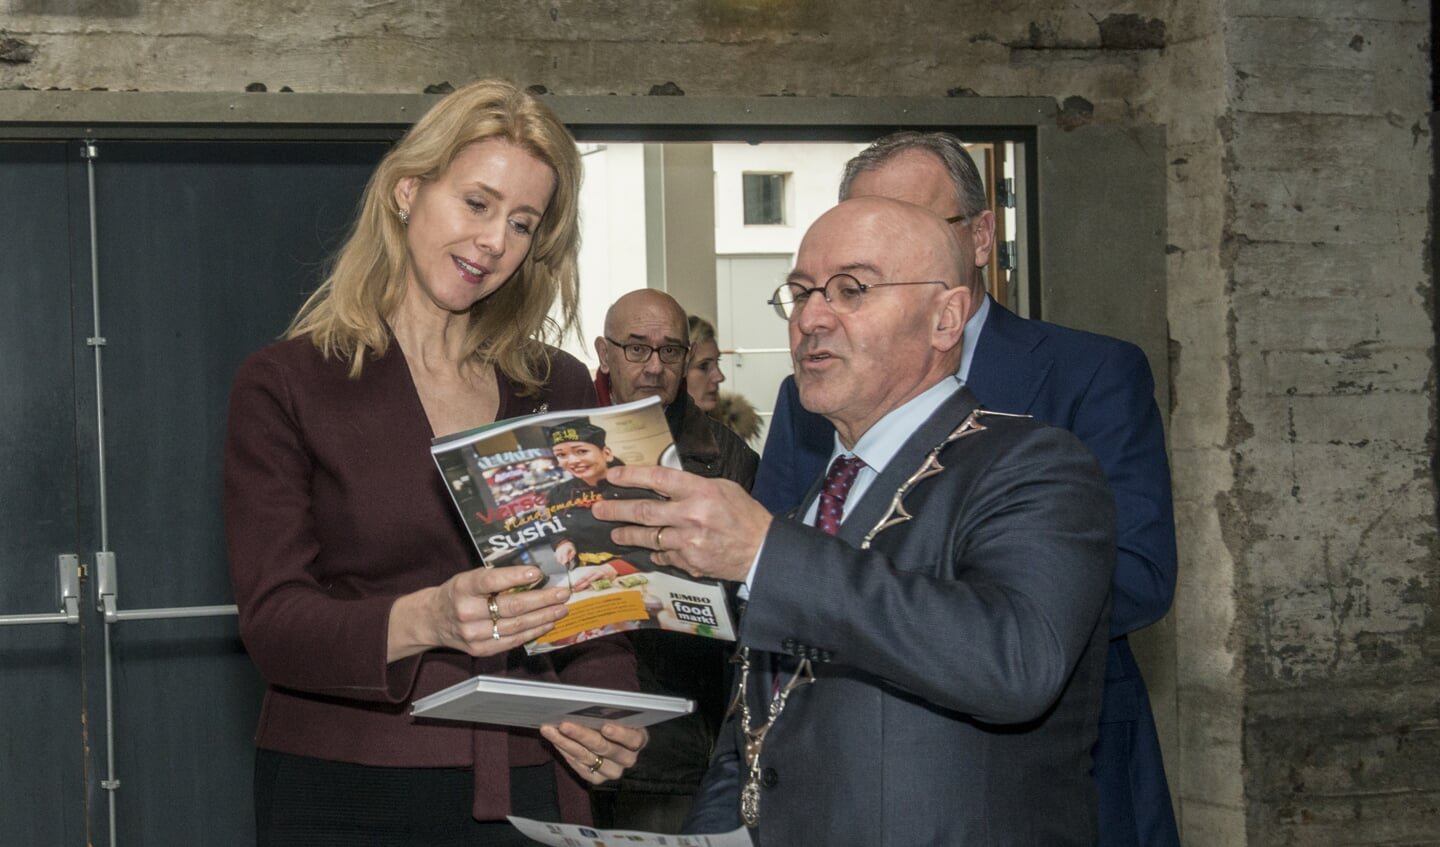 Burgemeester Van Rooij neemt samen met Mona Keijzer een magazine door/